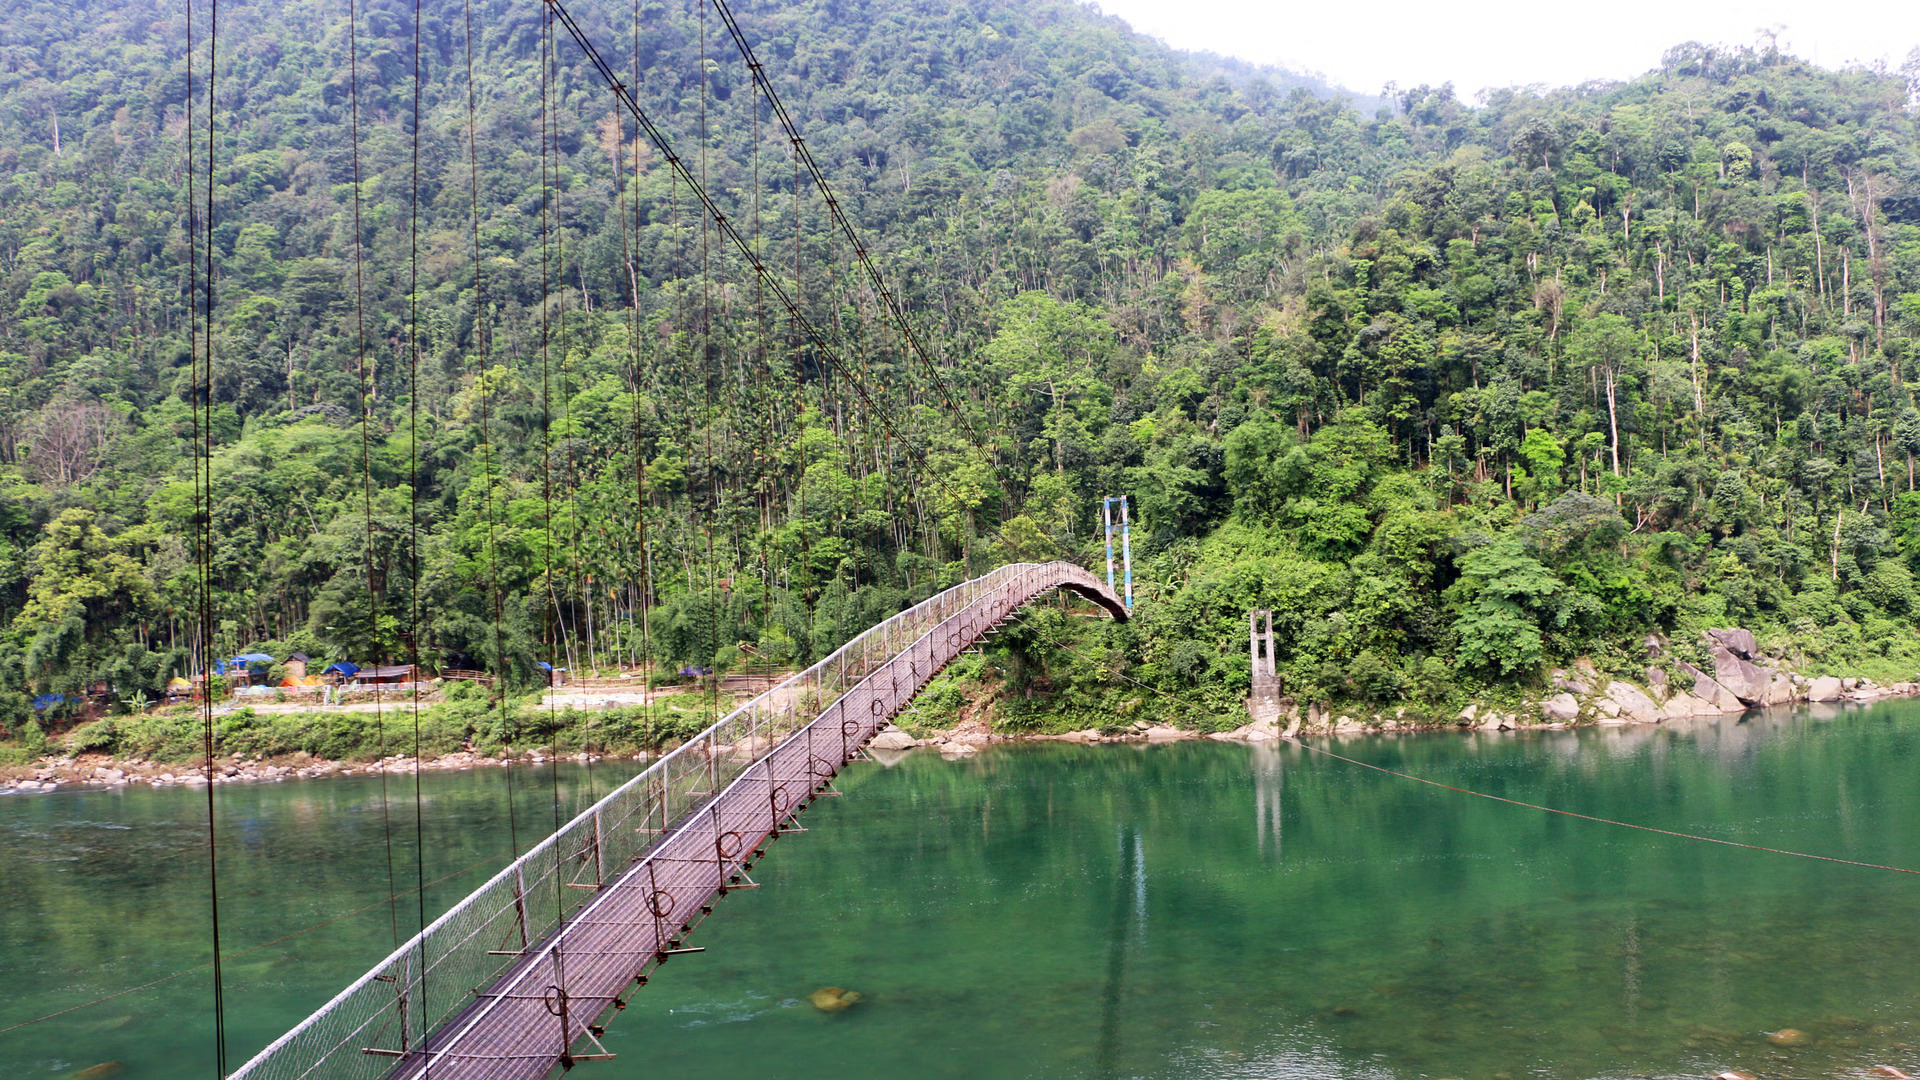 An Adventure in Meghalaya - Living Root Bridge Trek